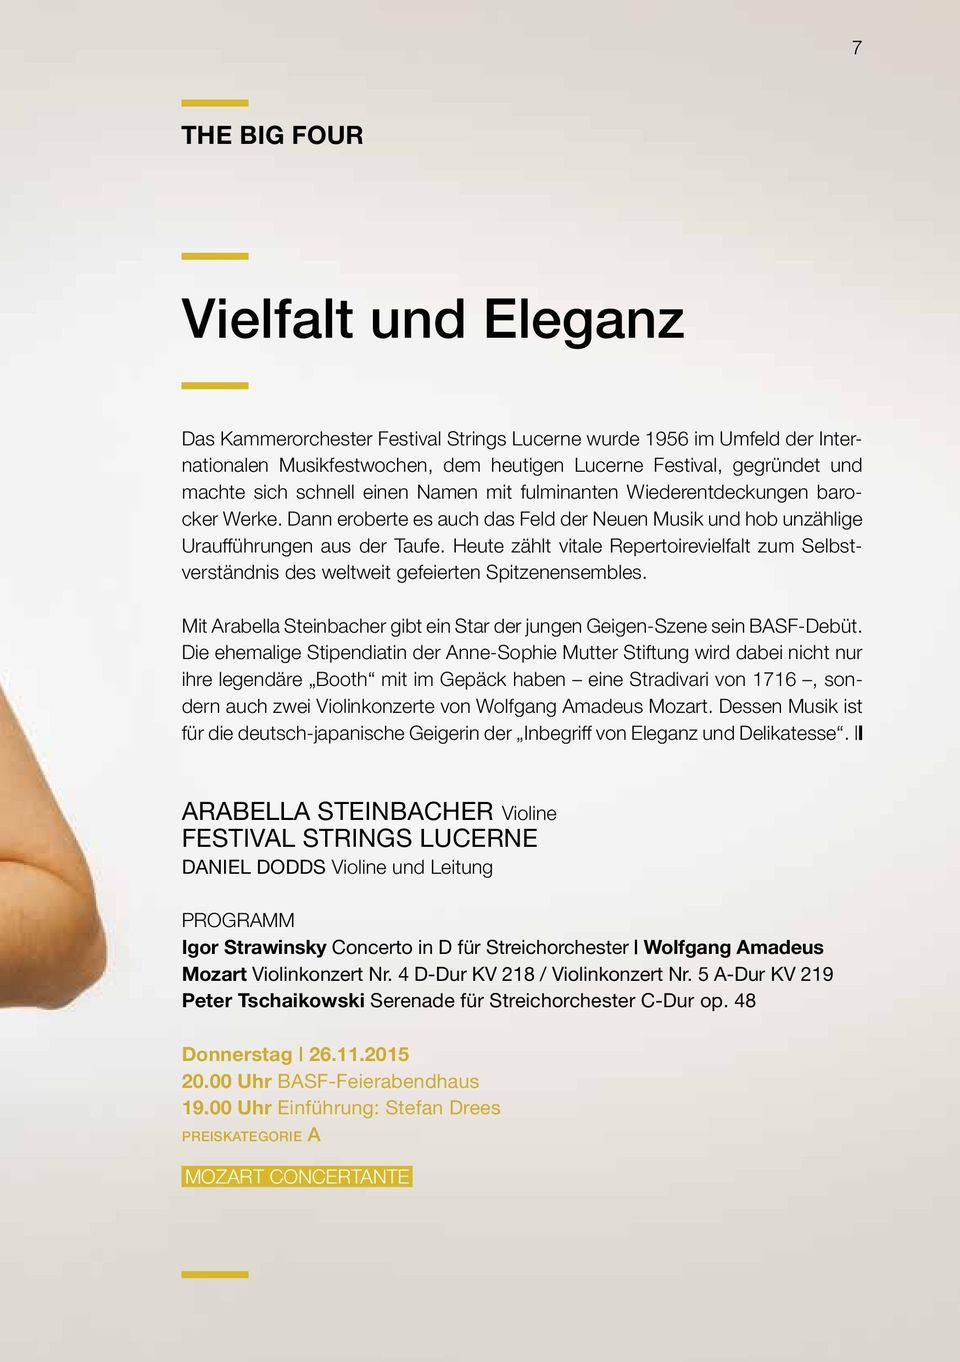 Heute zählt vitale Repertoirevielfalt zum Selbstverständnis des weltweit gefeierten Spitzenensembles. Mit Arabella Steinbacher gibt ein Star der jungen Geigen-Szene sein BASF-Debüt.